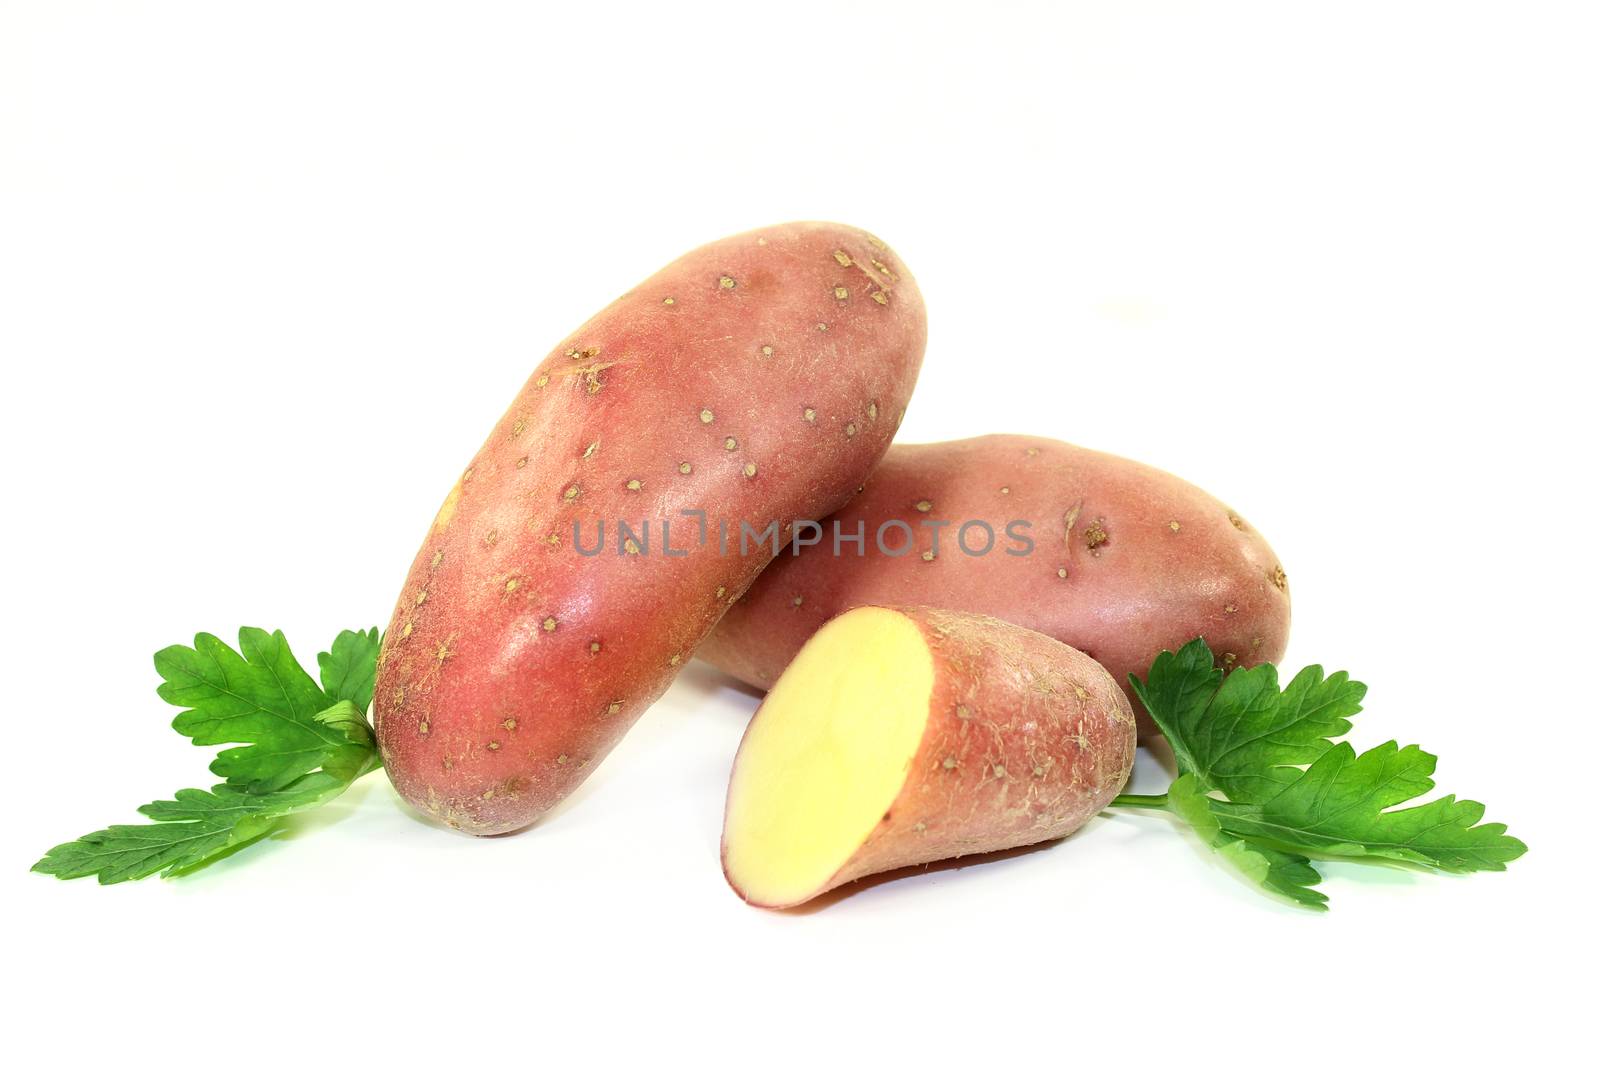 potatoes by silencefoto